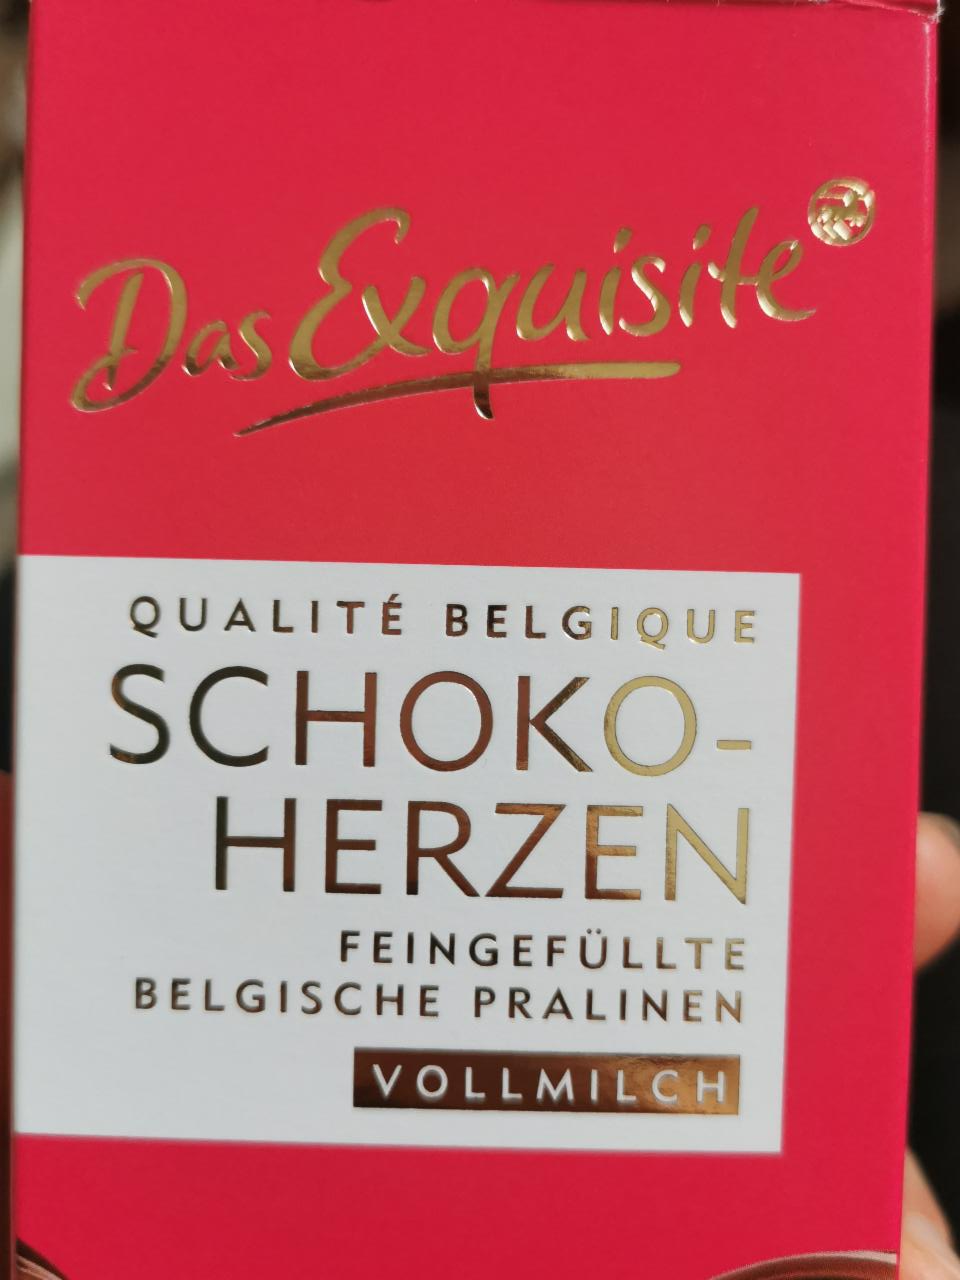 Fotografie - Schokoherzen (Praline mit belgischer Schokolade und Haselnussfüllung) Das Exquisite